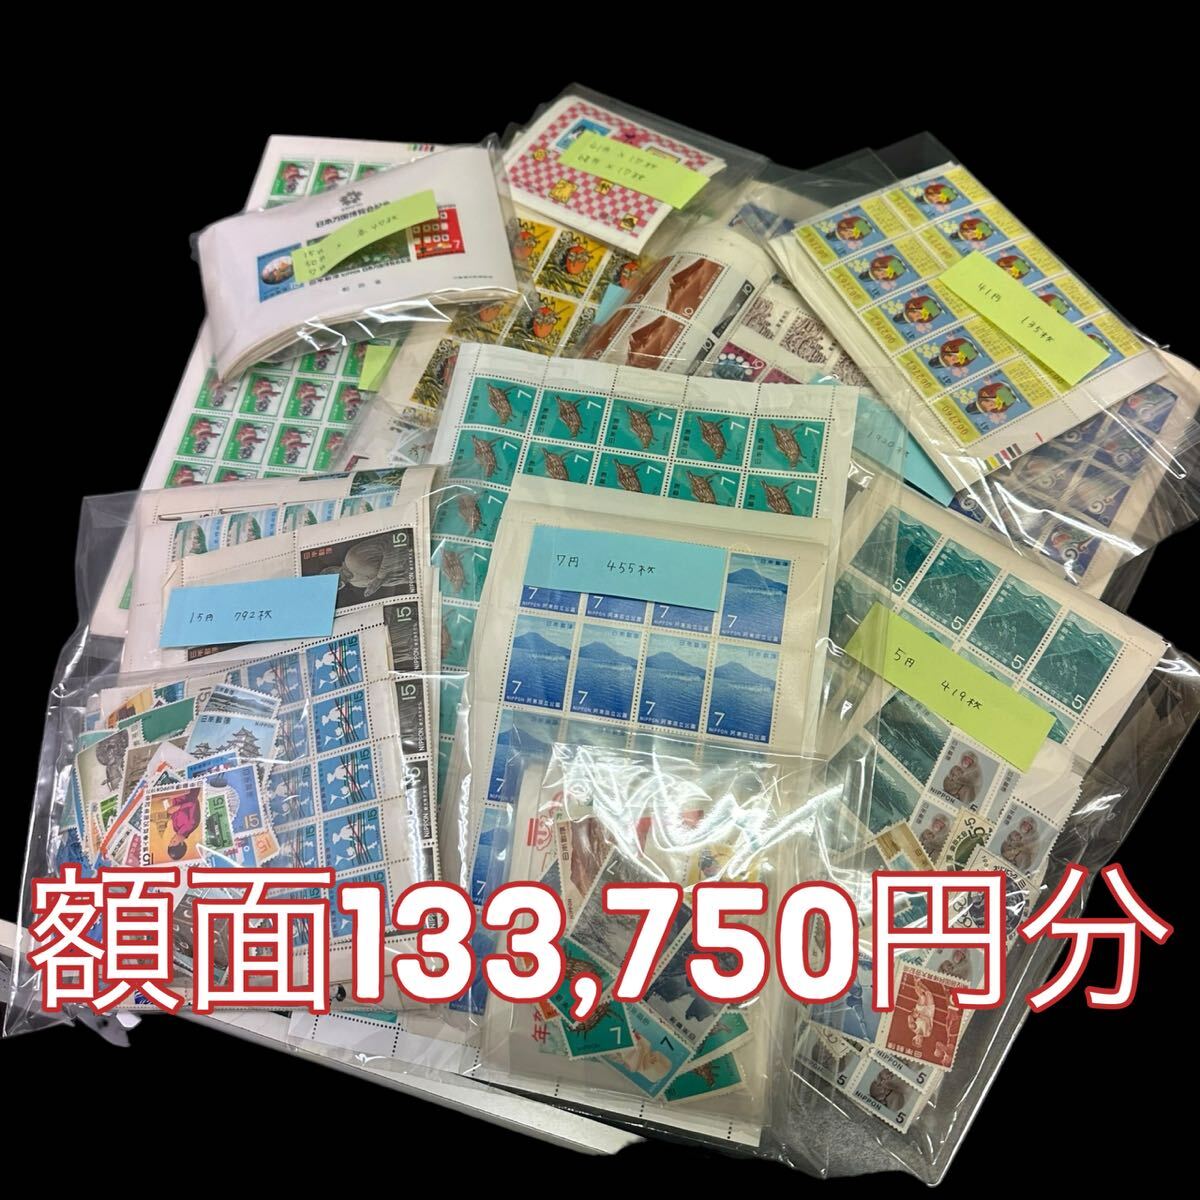 一円 日本 切手 まとめて 記念切手 未使用品 特殊切手 キャラクター シート 小型シート 額面133,750円分の画像1